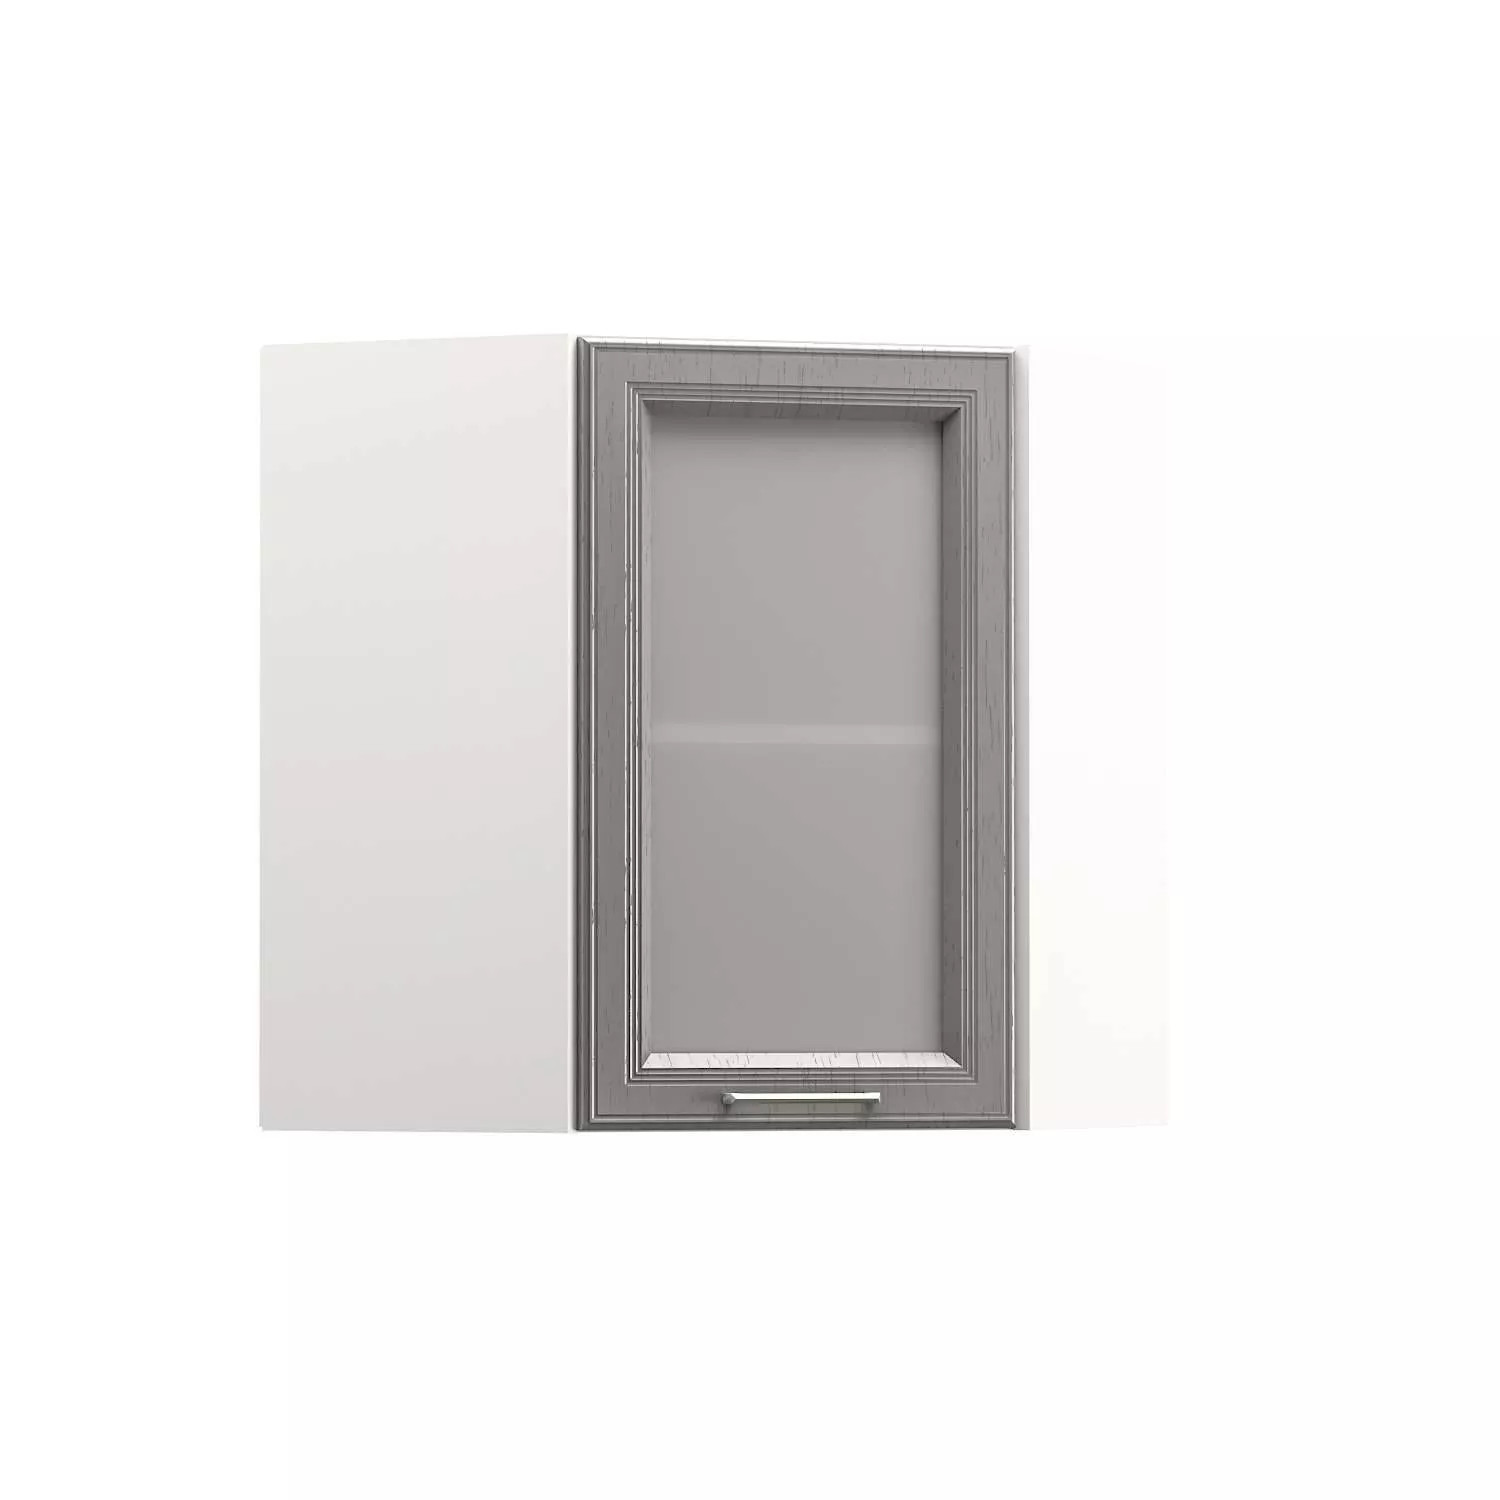 Милана шкаф навесной угловой витрина Белый/Дуб серый